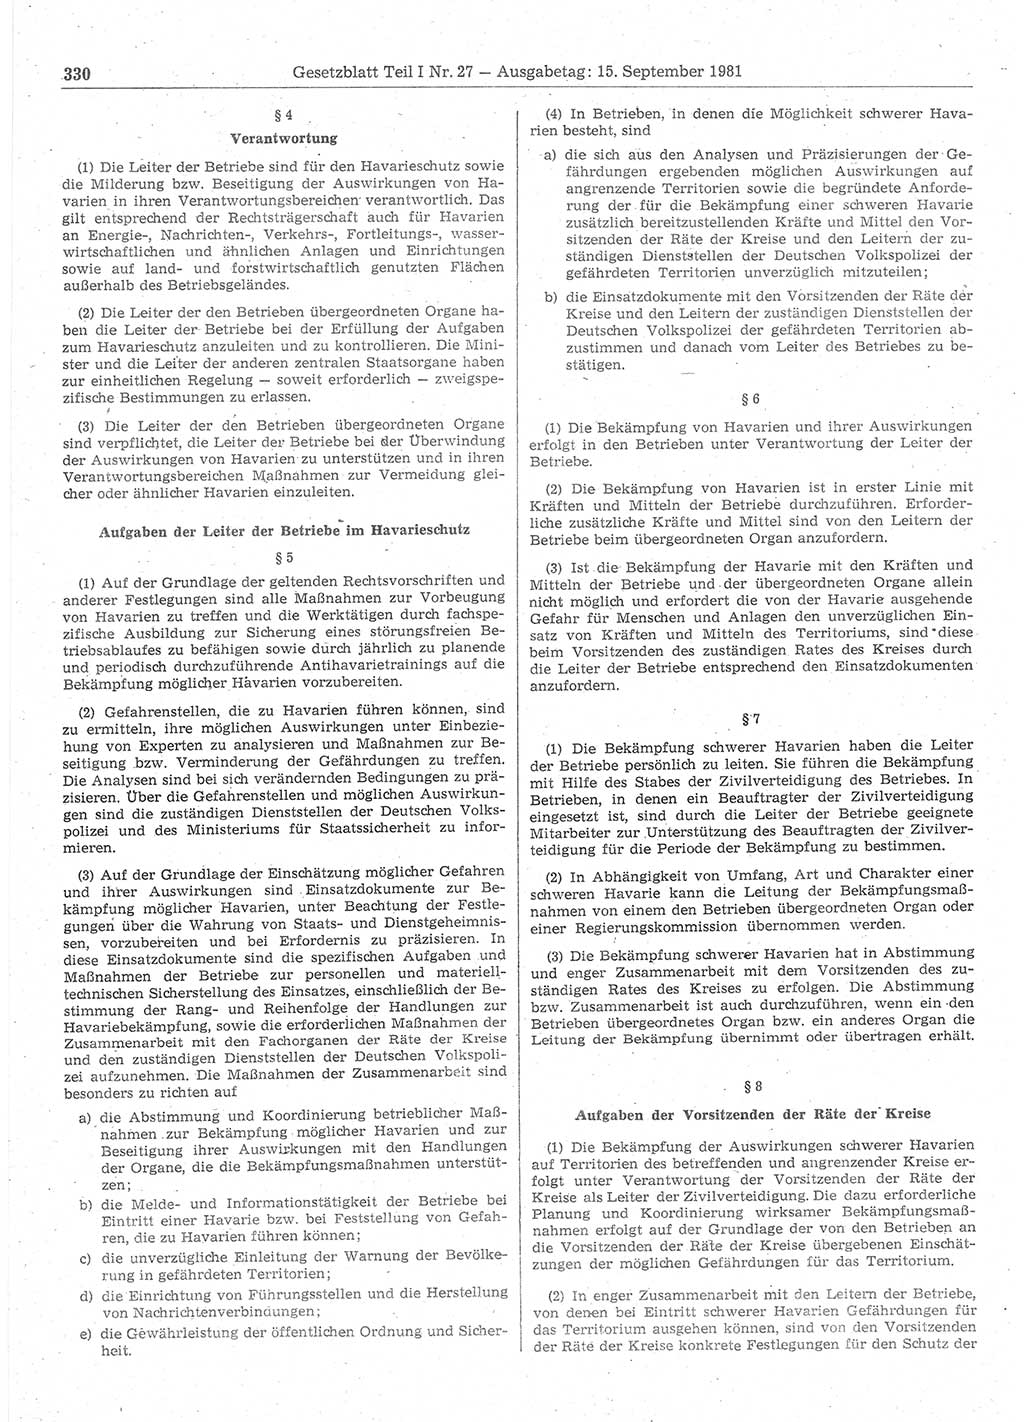 Gesetzblatt (GBl.) der Deutschen Demokratischen Republik (DDR) Teil Ⅰ 1981, Seite 330 (GBl. DDR Ⅰ 1981, S. 330)